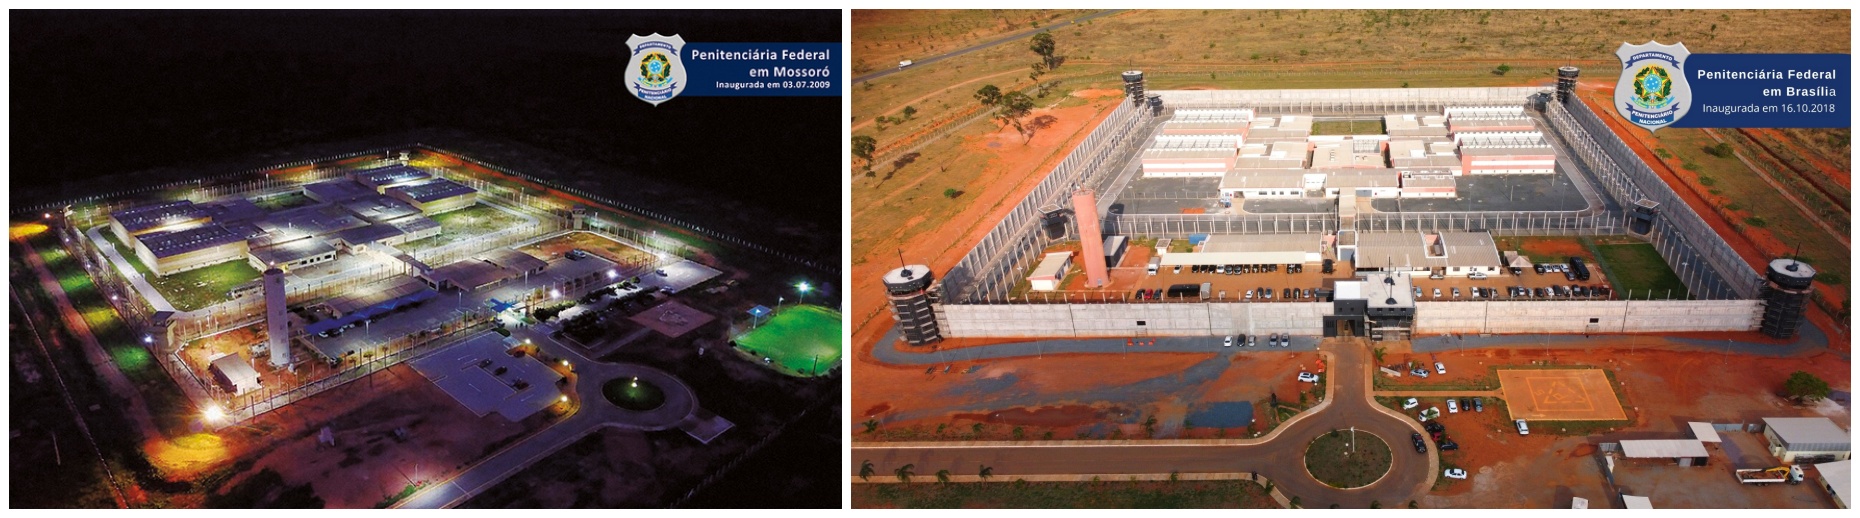 Com penitenciária de segurança máxima em Porto Velho, ministério da justiça pontua: fuga em Mossoró foi um episódio que não vai mais ocorrer - News Rondônia